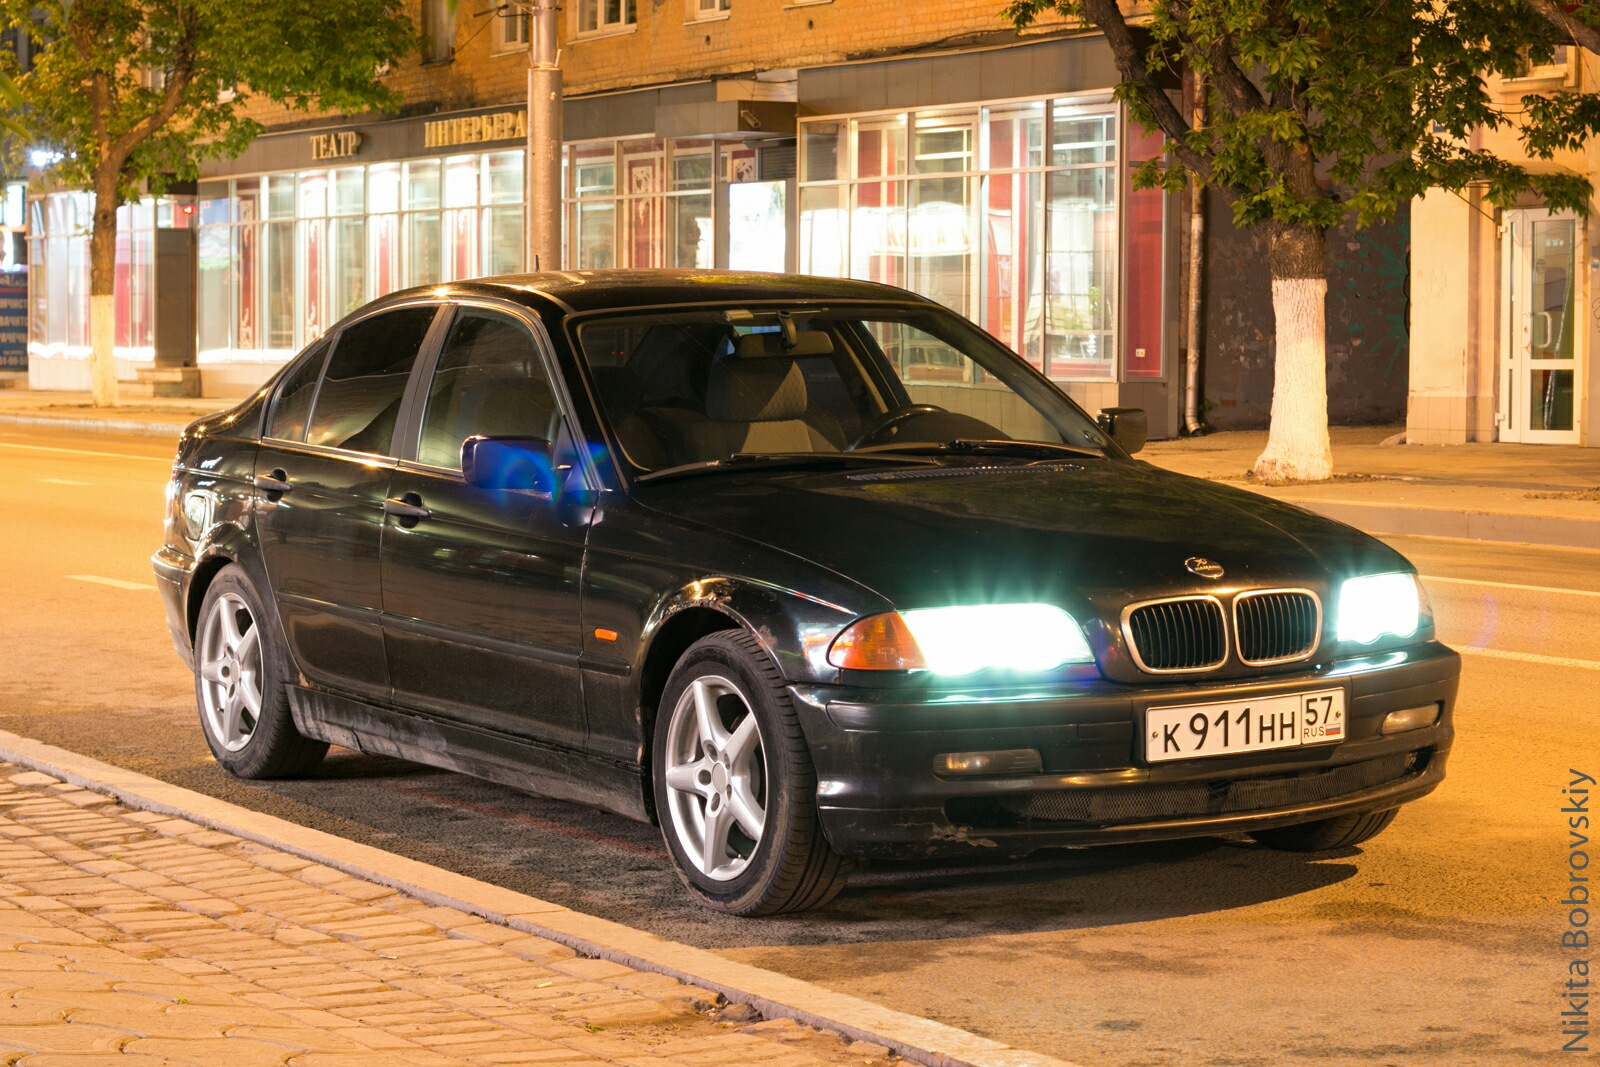 2000 год на продажу. БМВ 3 2000г. BMW 3 Series 2000. BMW 3 2000 года. БМВ 3 седан 2000 года.